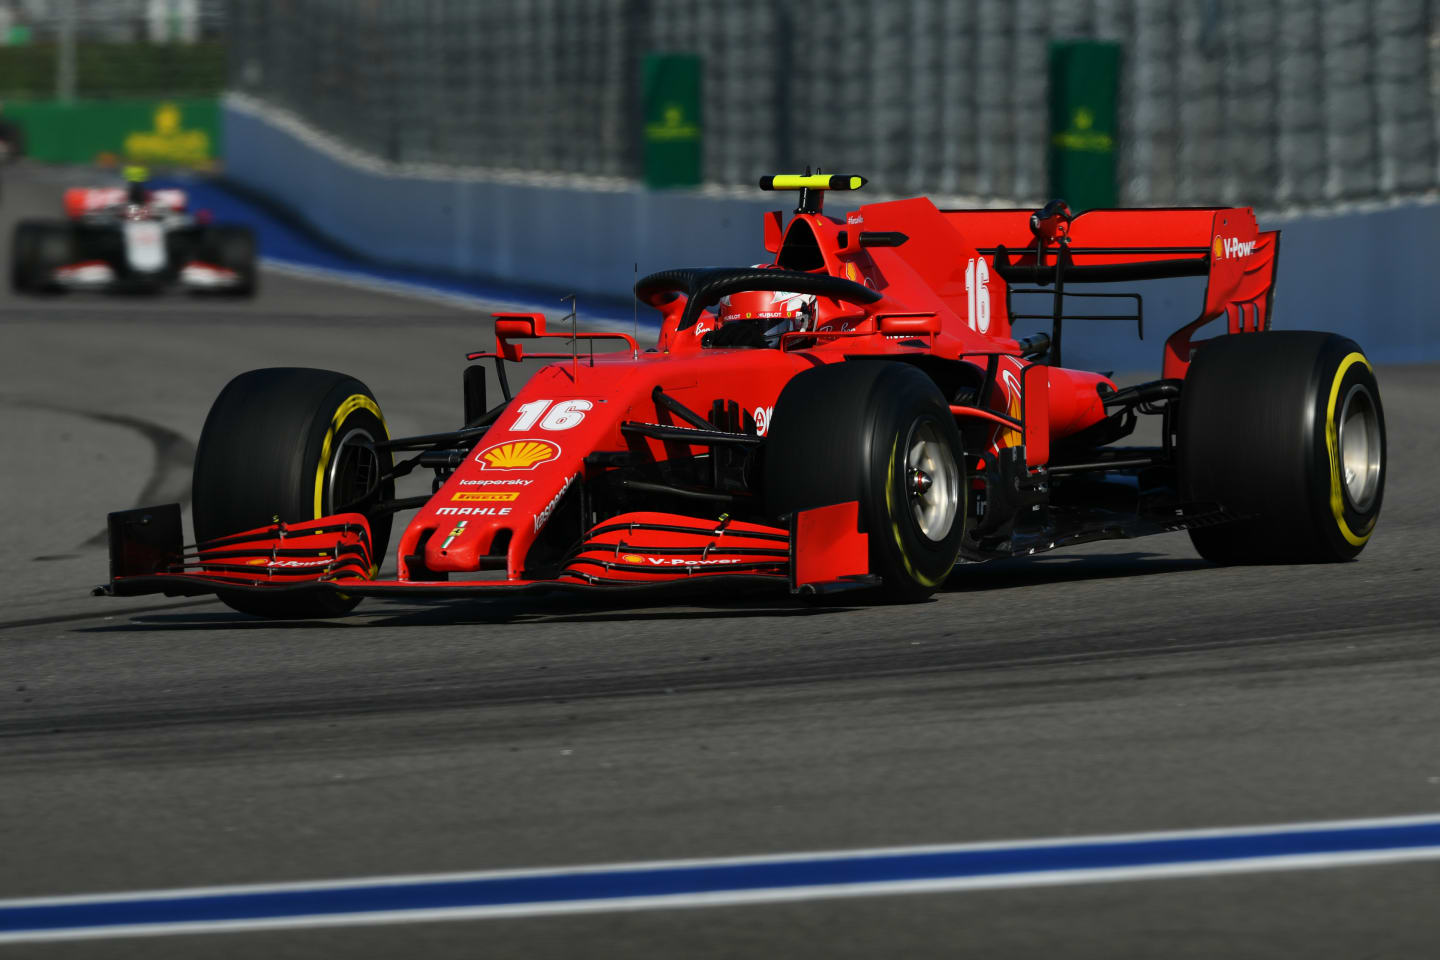 SOCHI, RUSSIA - SEPTEMBER 27: Charles Leclerc of Monaco driving the (16) Scuderia Ferrari SF1000 on